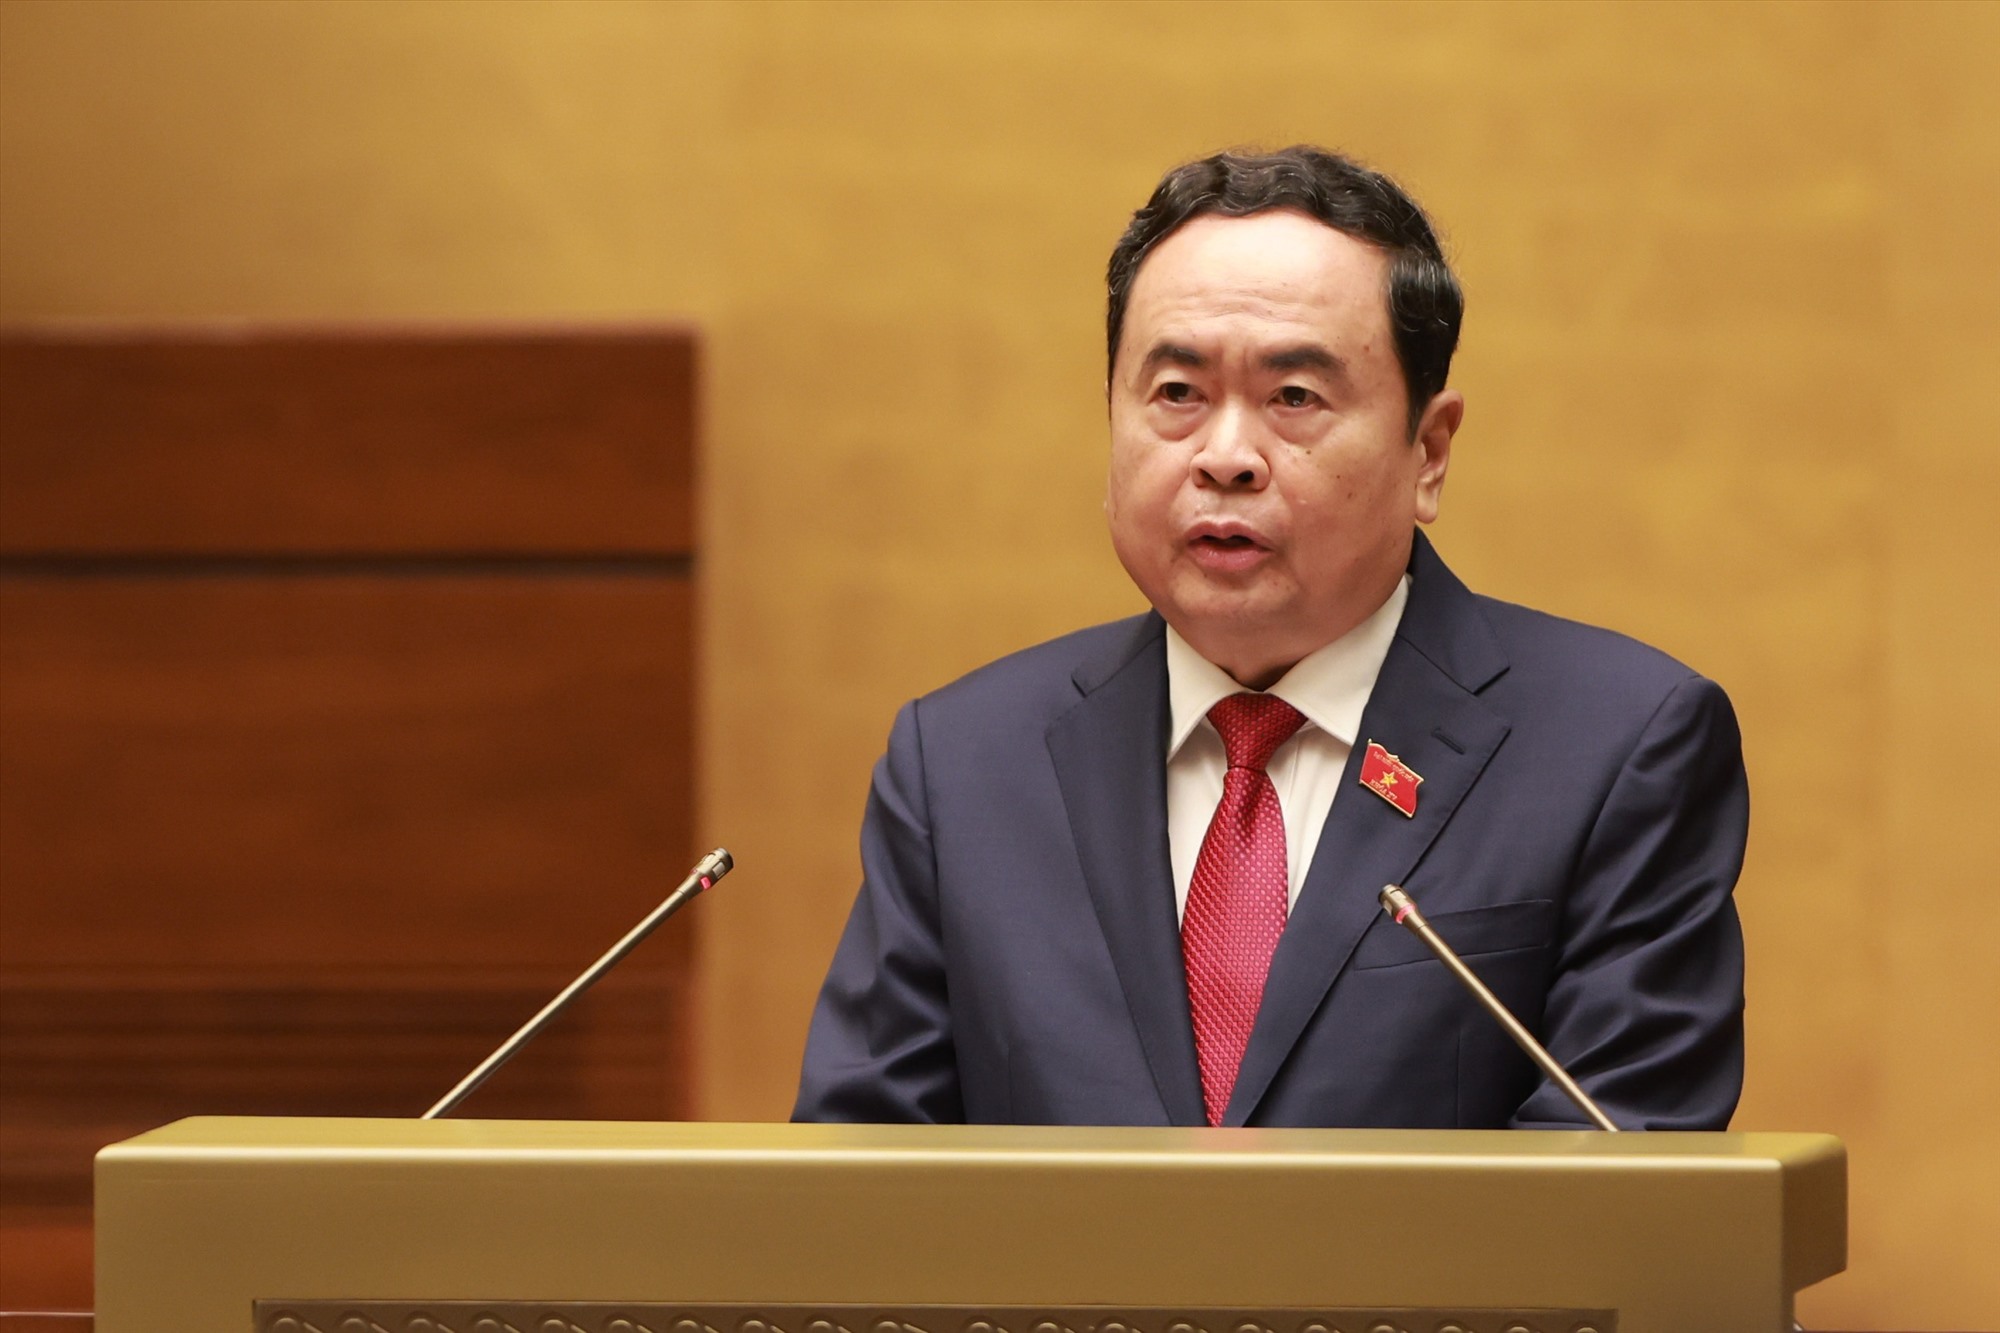 Phó Chủ tịch Thường trực Quốc hội Trần Thanh Mẫn phát biểu. Ảnh: Hải Nguyễn